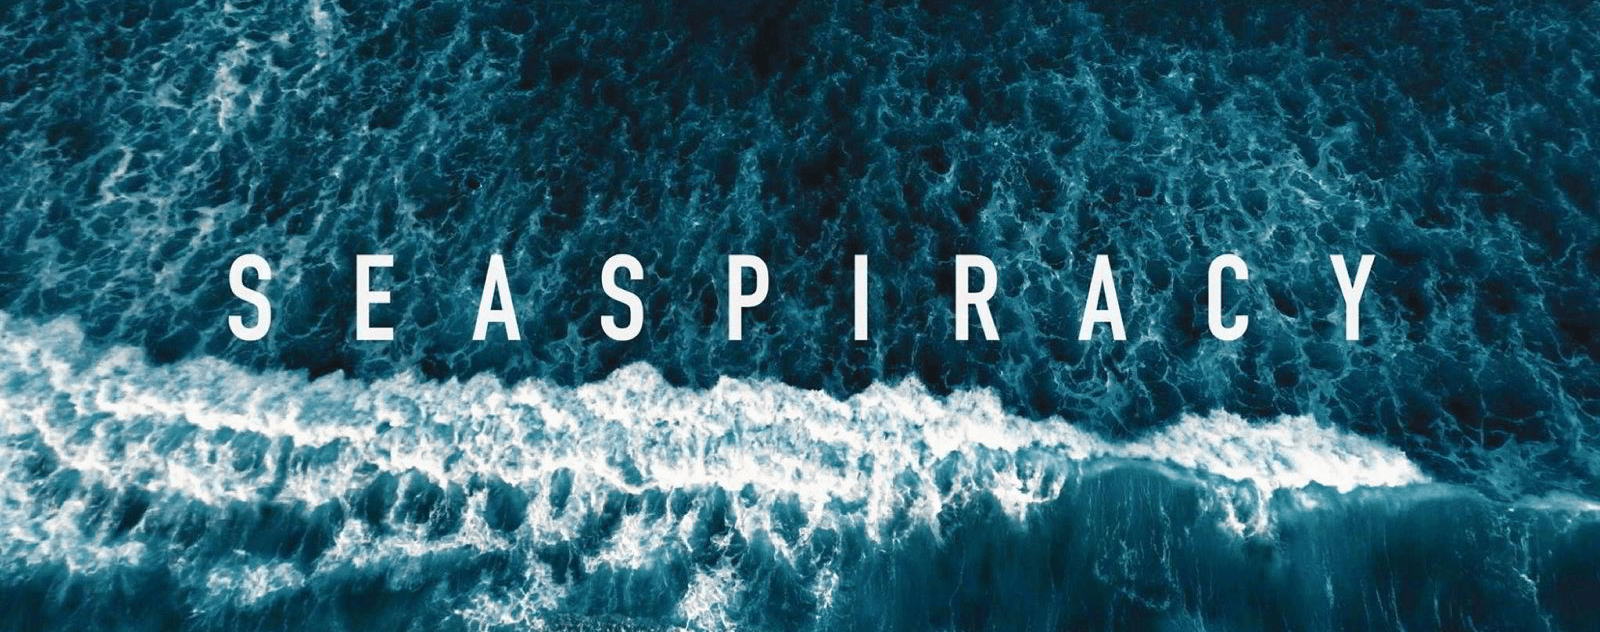 Seaspiracy le documentaire choc d'Ali Tabrizi sur l'état des océans